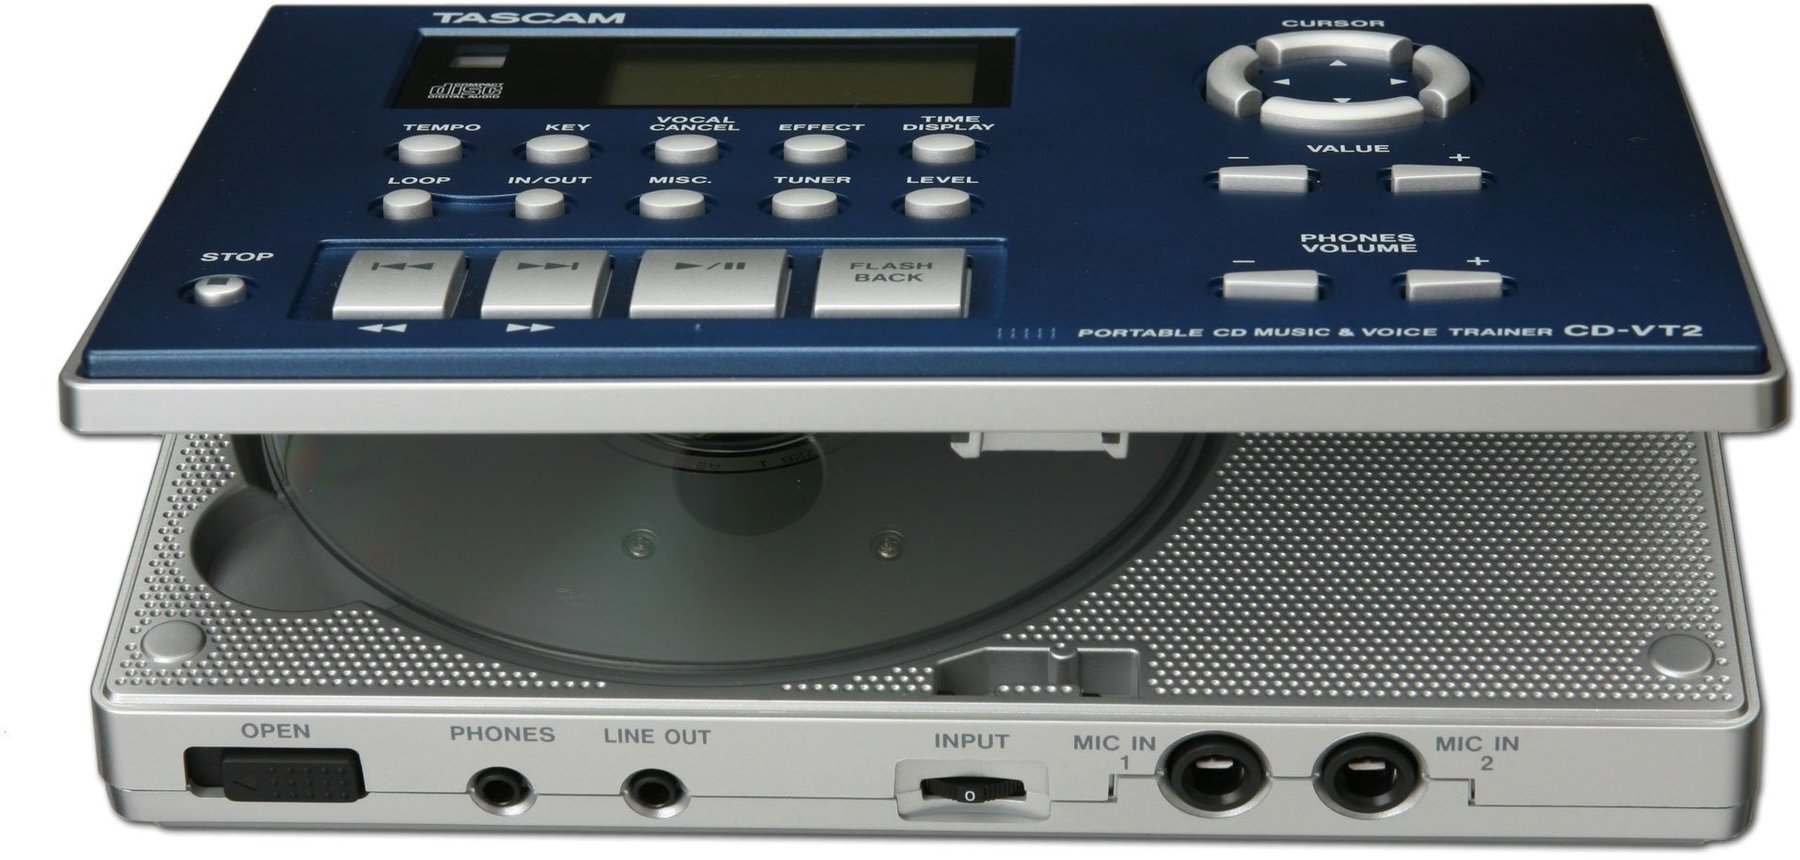 Odtwarzacz typu Rack Tascam CD-VT2